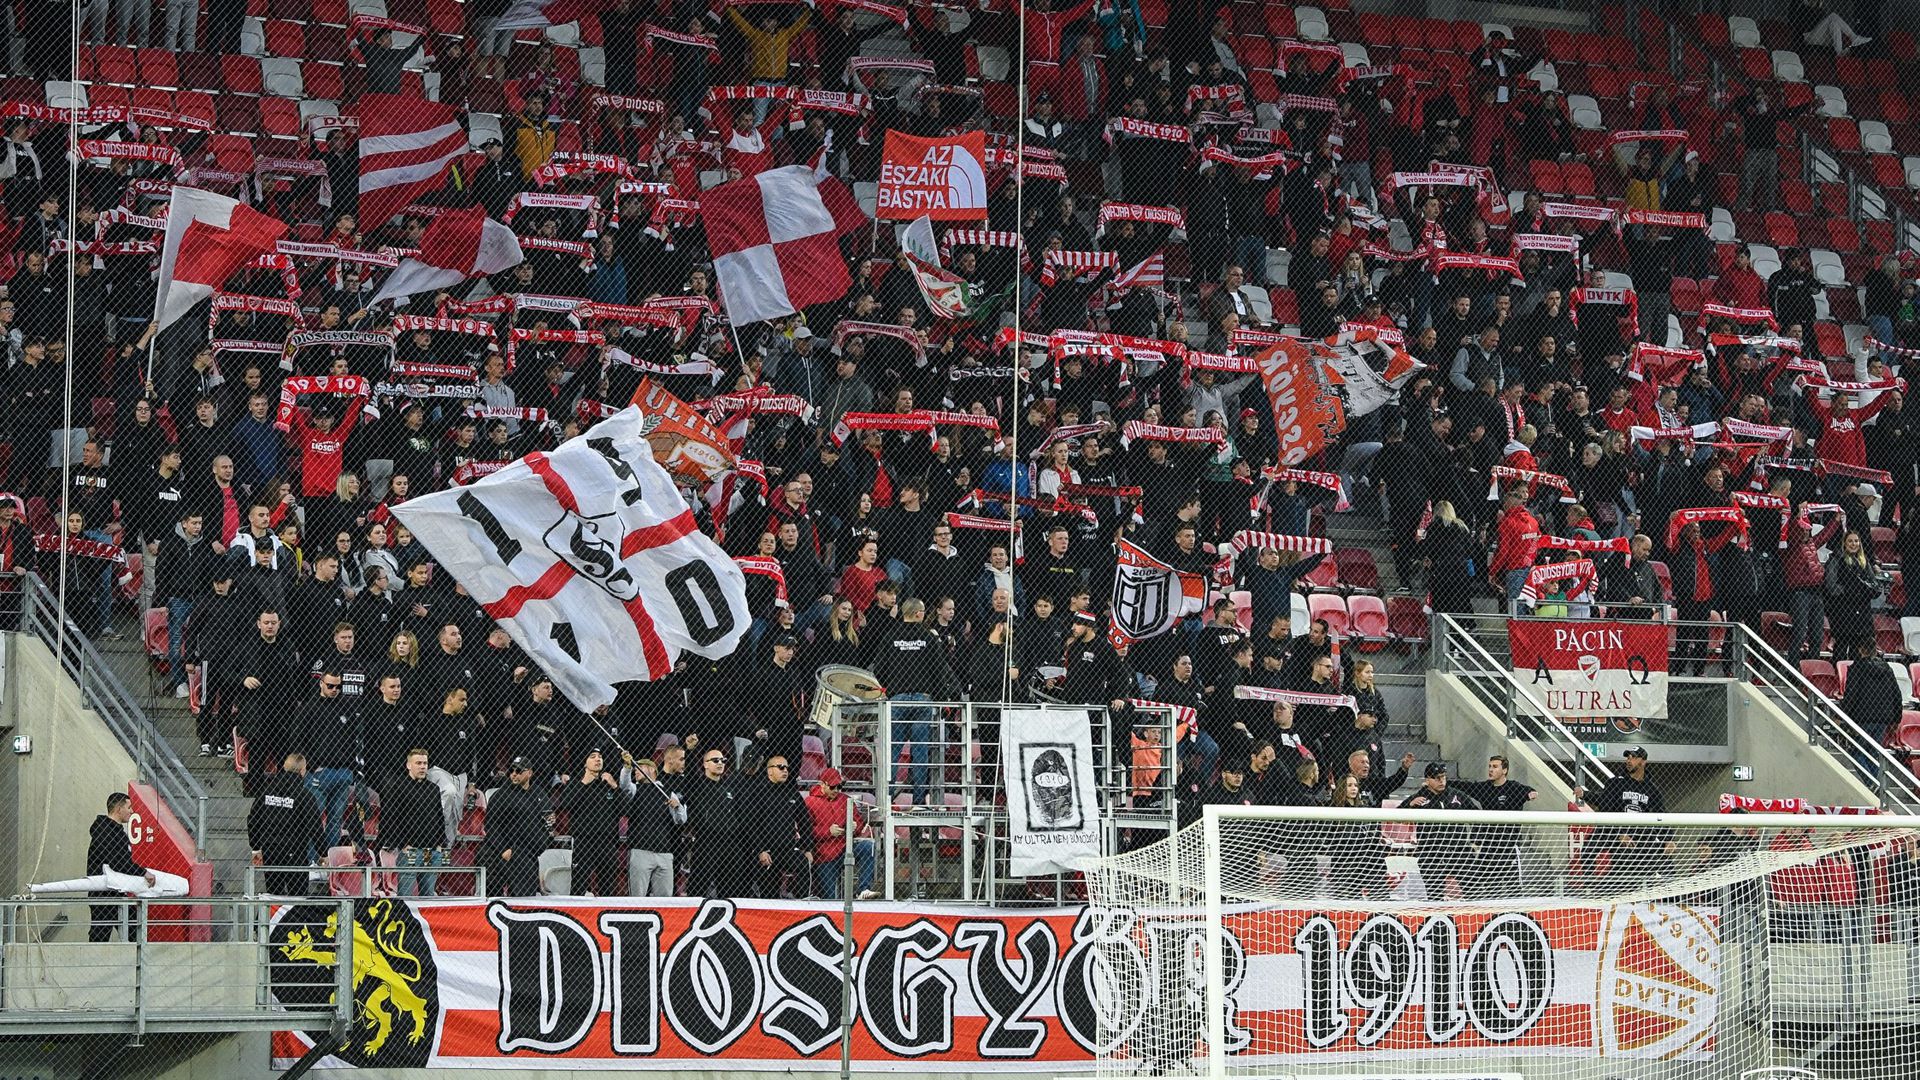 A Diósgyőr-szurkolók egy csoportja hiányzott az utolsó tavaszi hazai bajnokiról, éppen, amikor a csapat legyőzte a Ferencvárost. (Fotó: dvtk.eu)